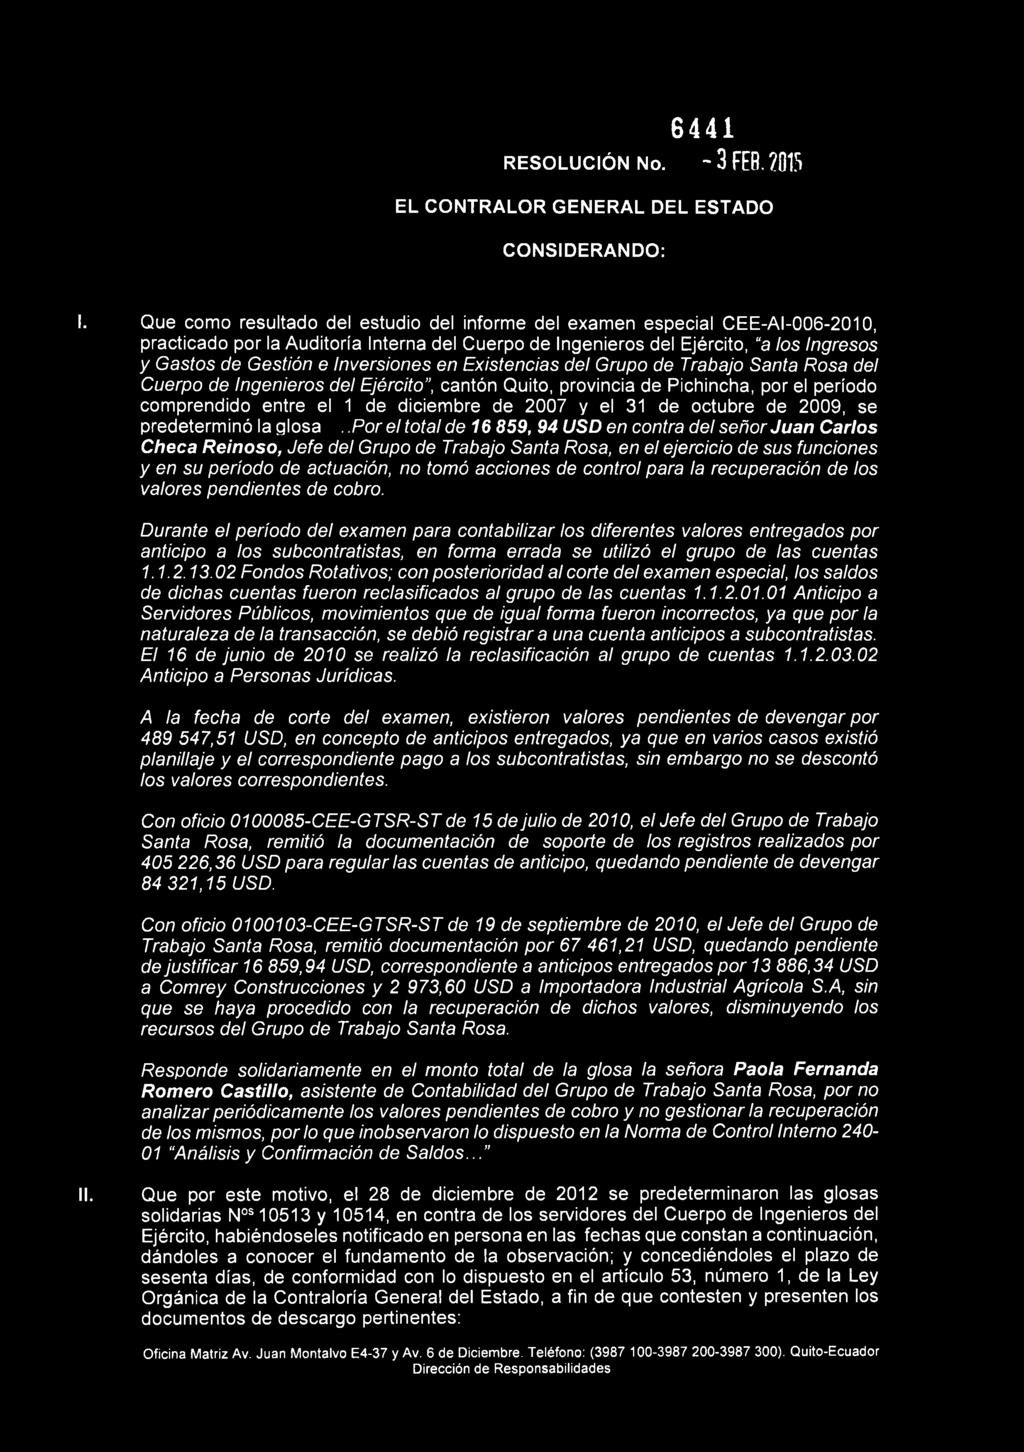 Inversiones en Existencias del Grupo de Trabajo Santa Rosa del Cuerpo de Ingenieros del Ejército", cantón Quito, provincia de Pichincha, por el período comprendido entre el 1 de diciembre de 2007 y